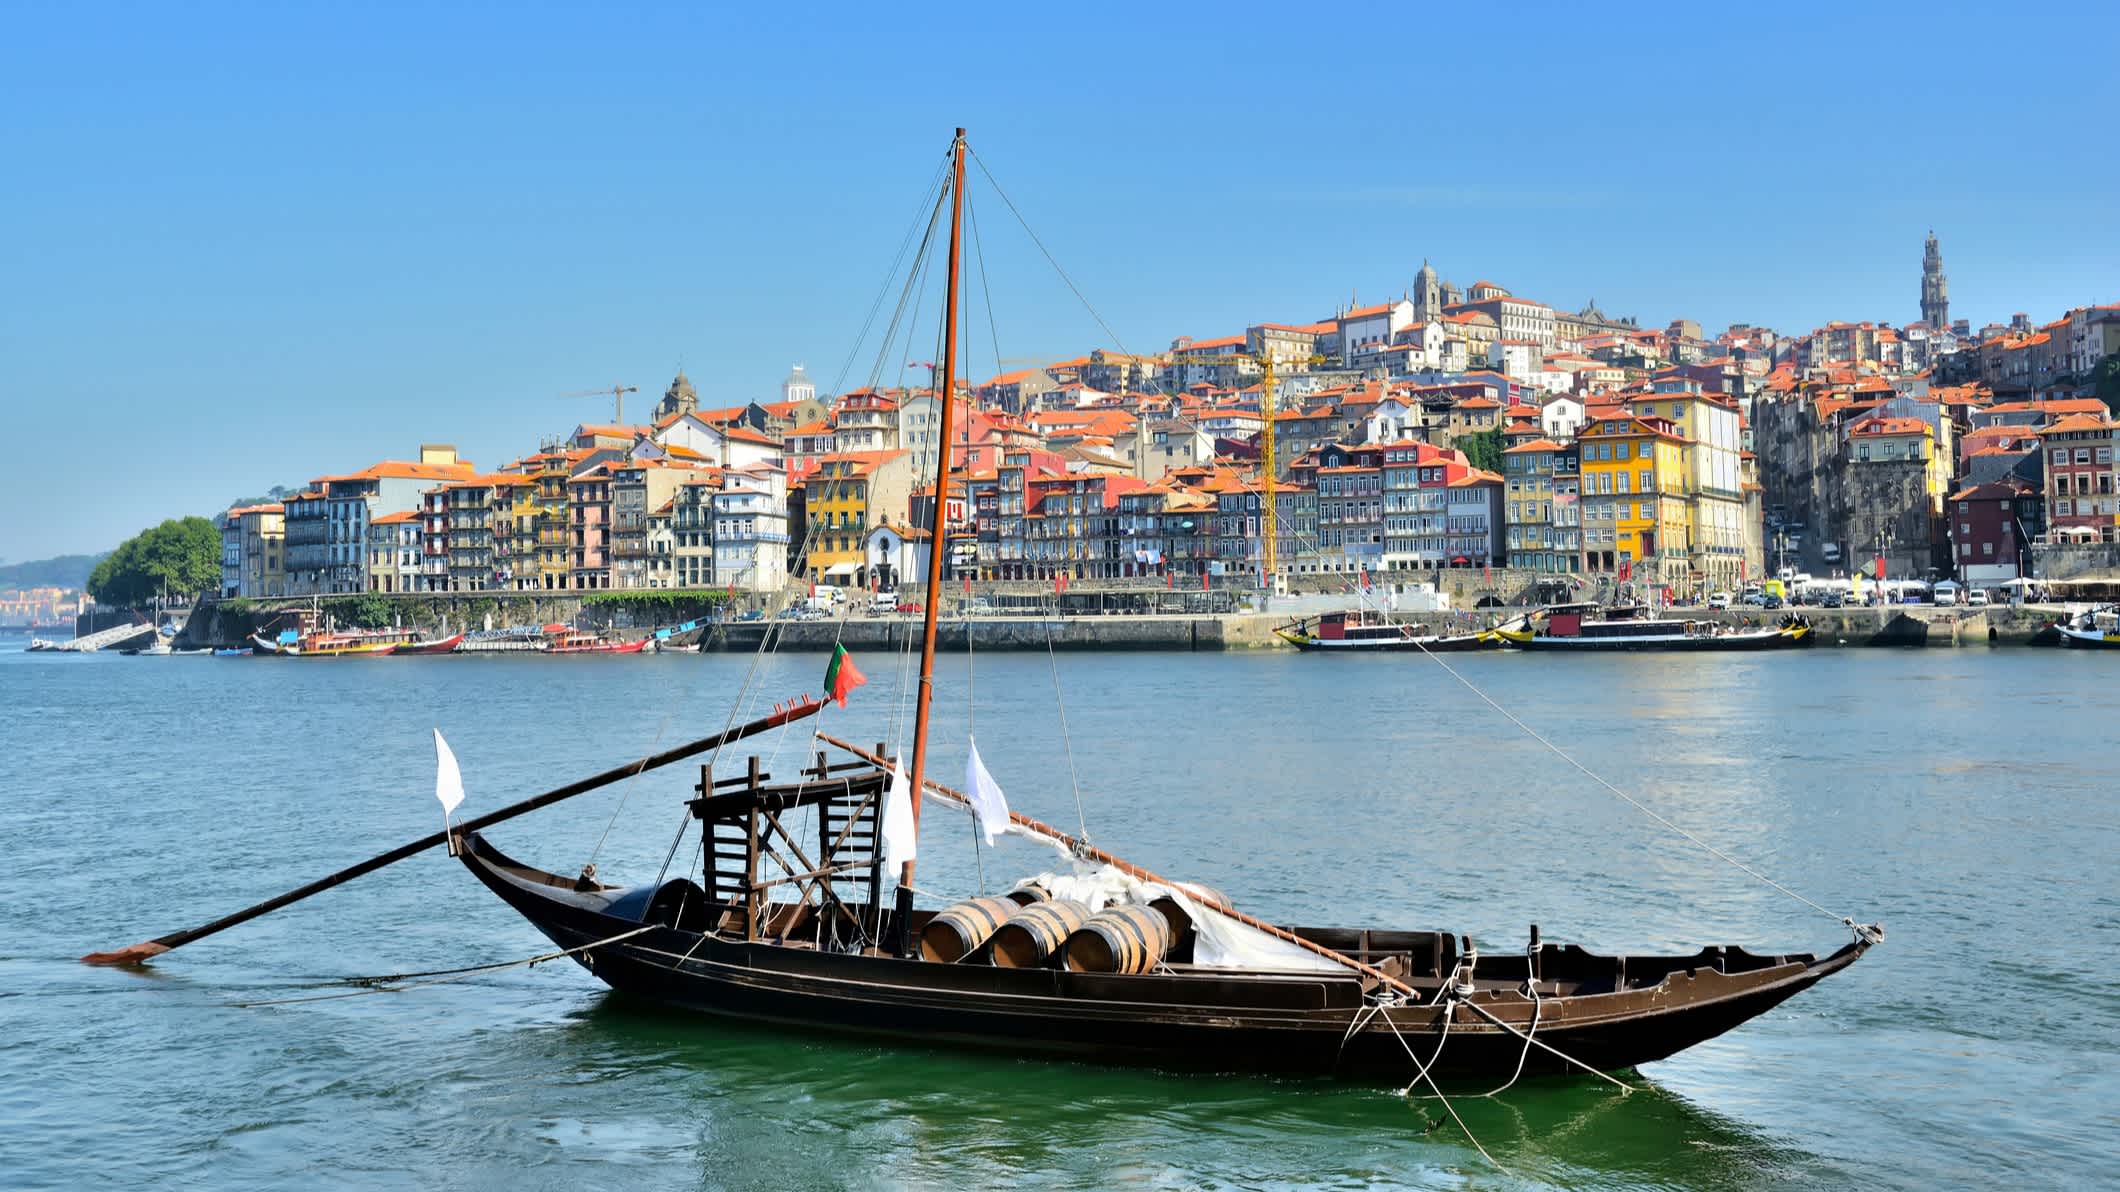 Porto im Stadtzentrum mit dem Fluss Douro und einem traditionellen Boot, Portugal

